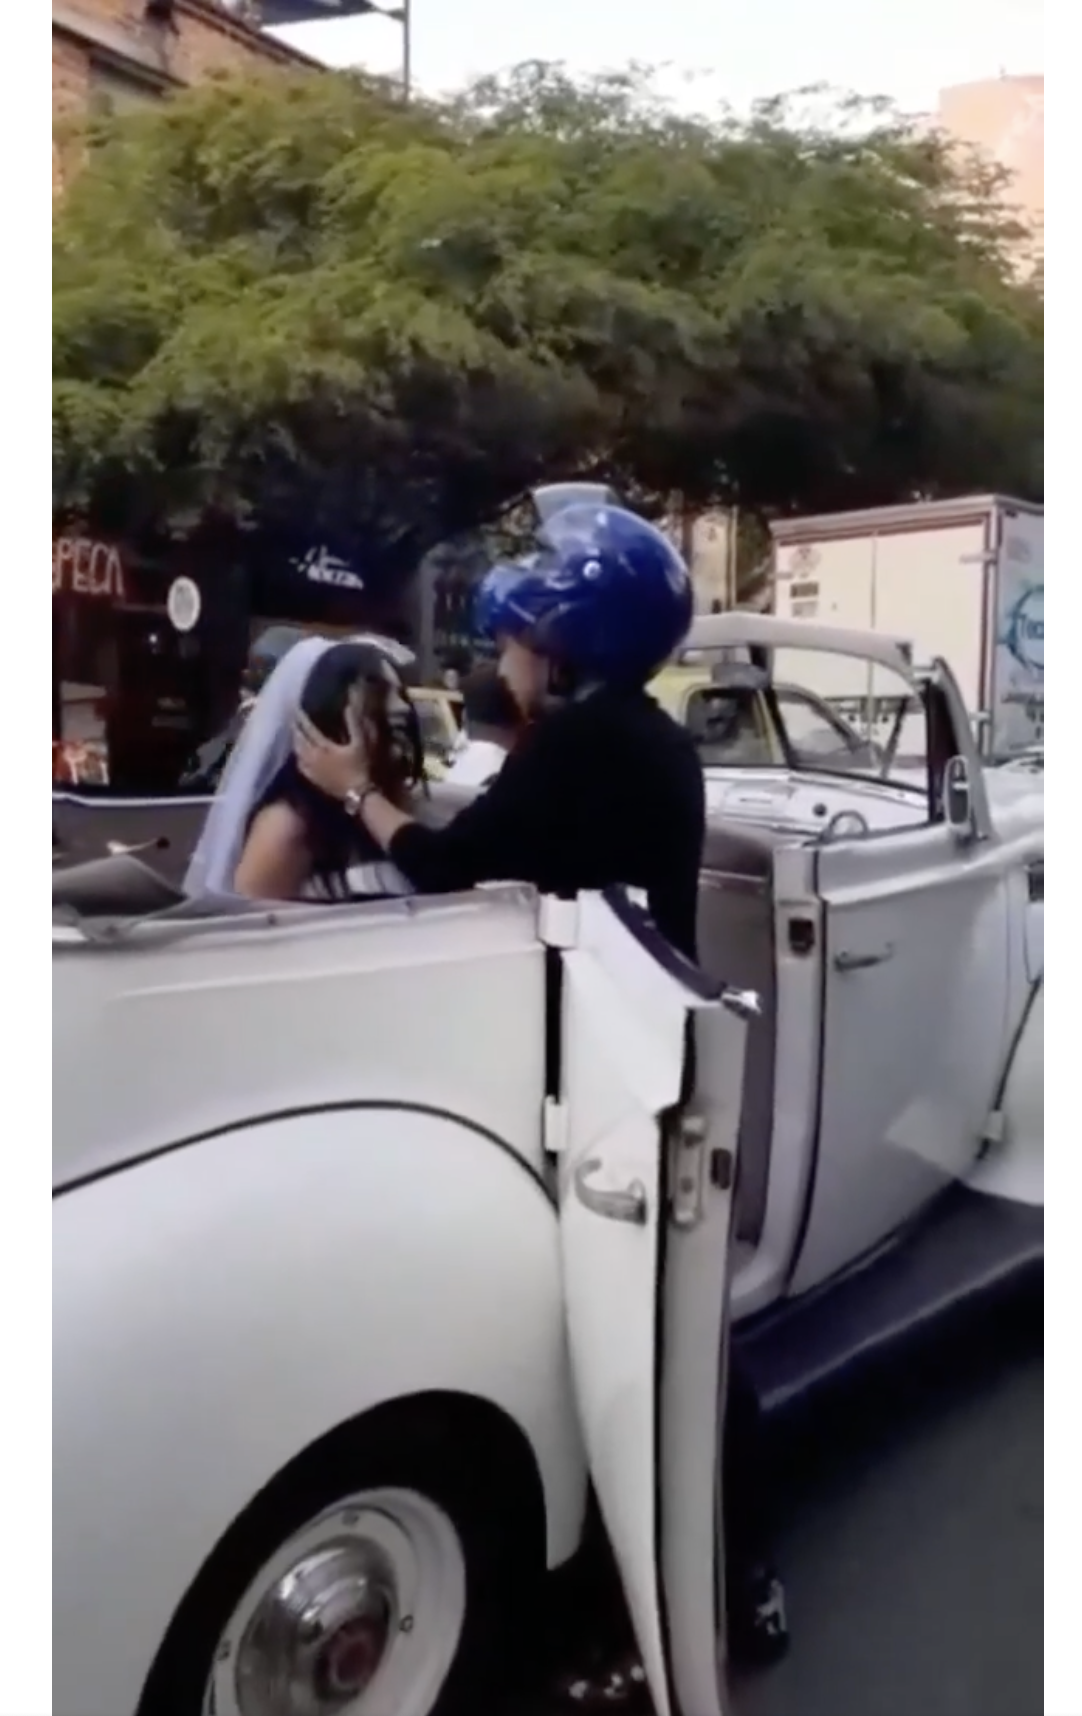 Der Biker zeigt eine romantische Geste, indem er das Gesicht der Braut greift. | Quelle: facebook.com/maspopulareventos